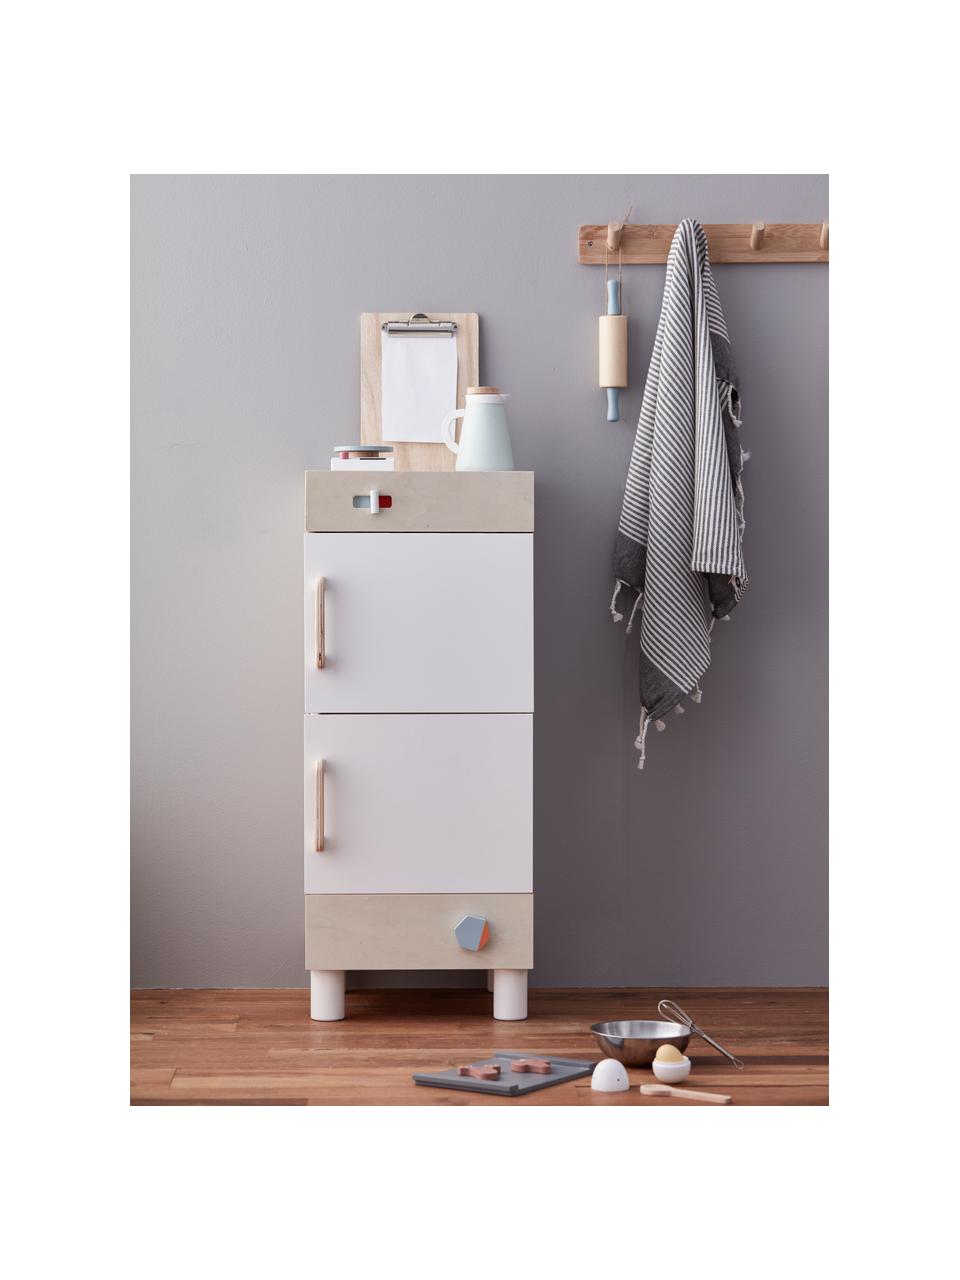 Spielzeug-Kühlschrank, Holz, Weiss, Holz, B 30 x H 73 cm